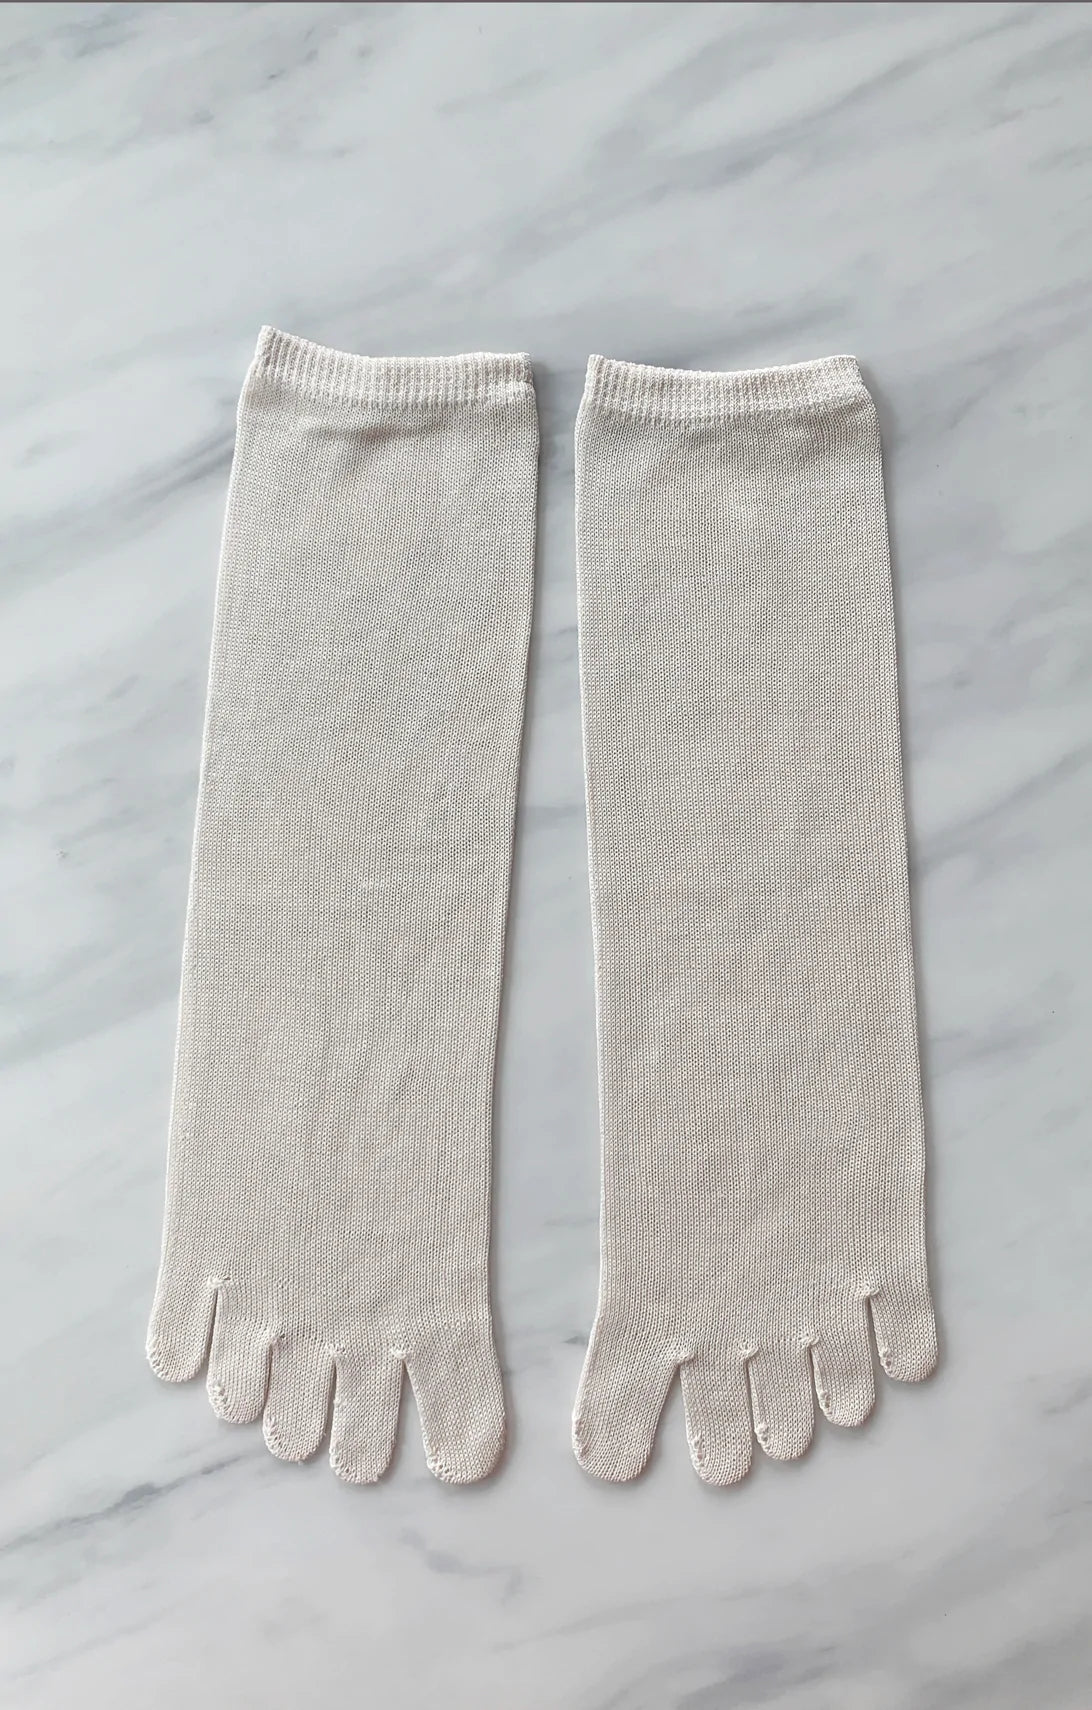 TABBISOCKS brand Washable 100% Finest Silk Toe Liner Socks in natural ivory color